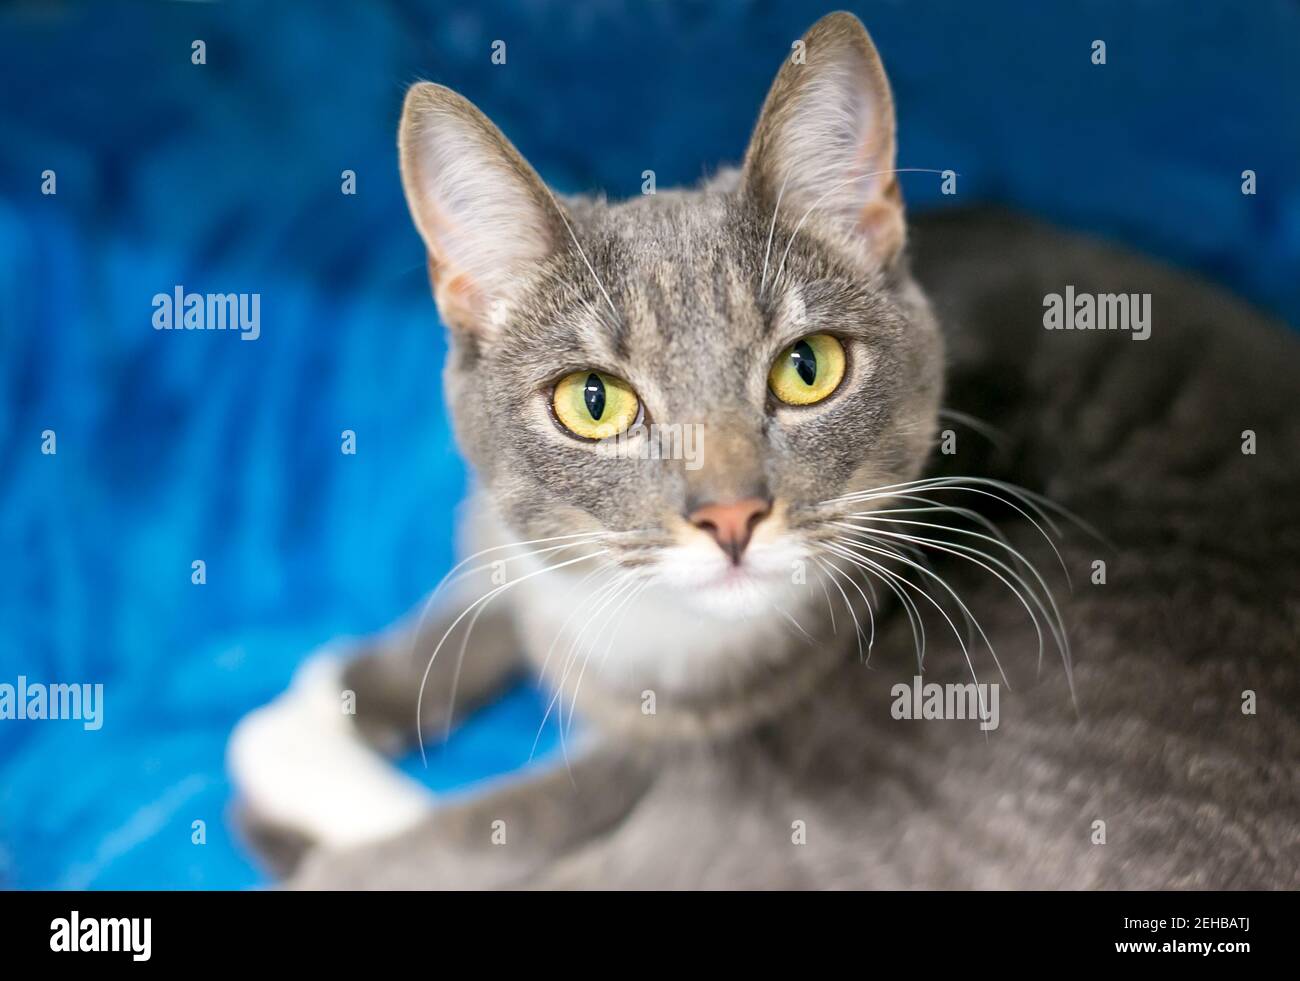 Un chat court tabby gris avec des yeux jaunes, allongé sur une couverture bleue et regardant l'appareil photo Banque D'Images